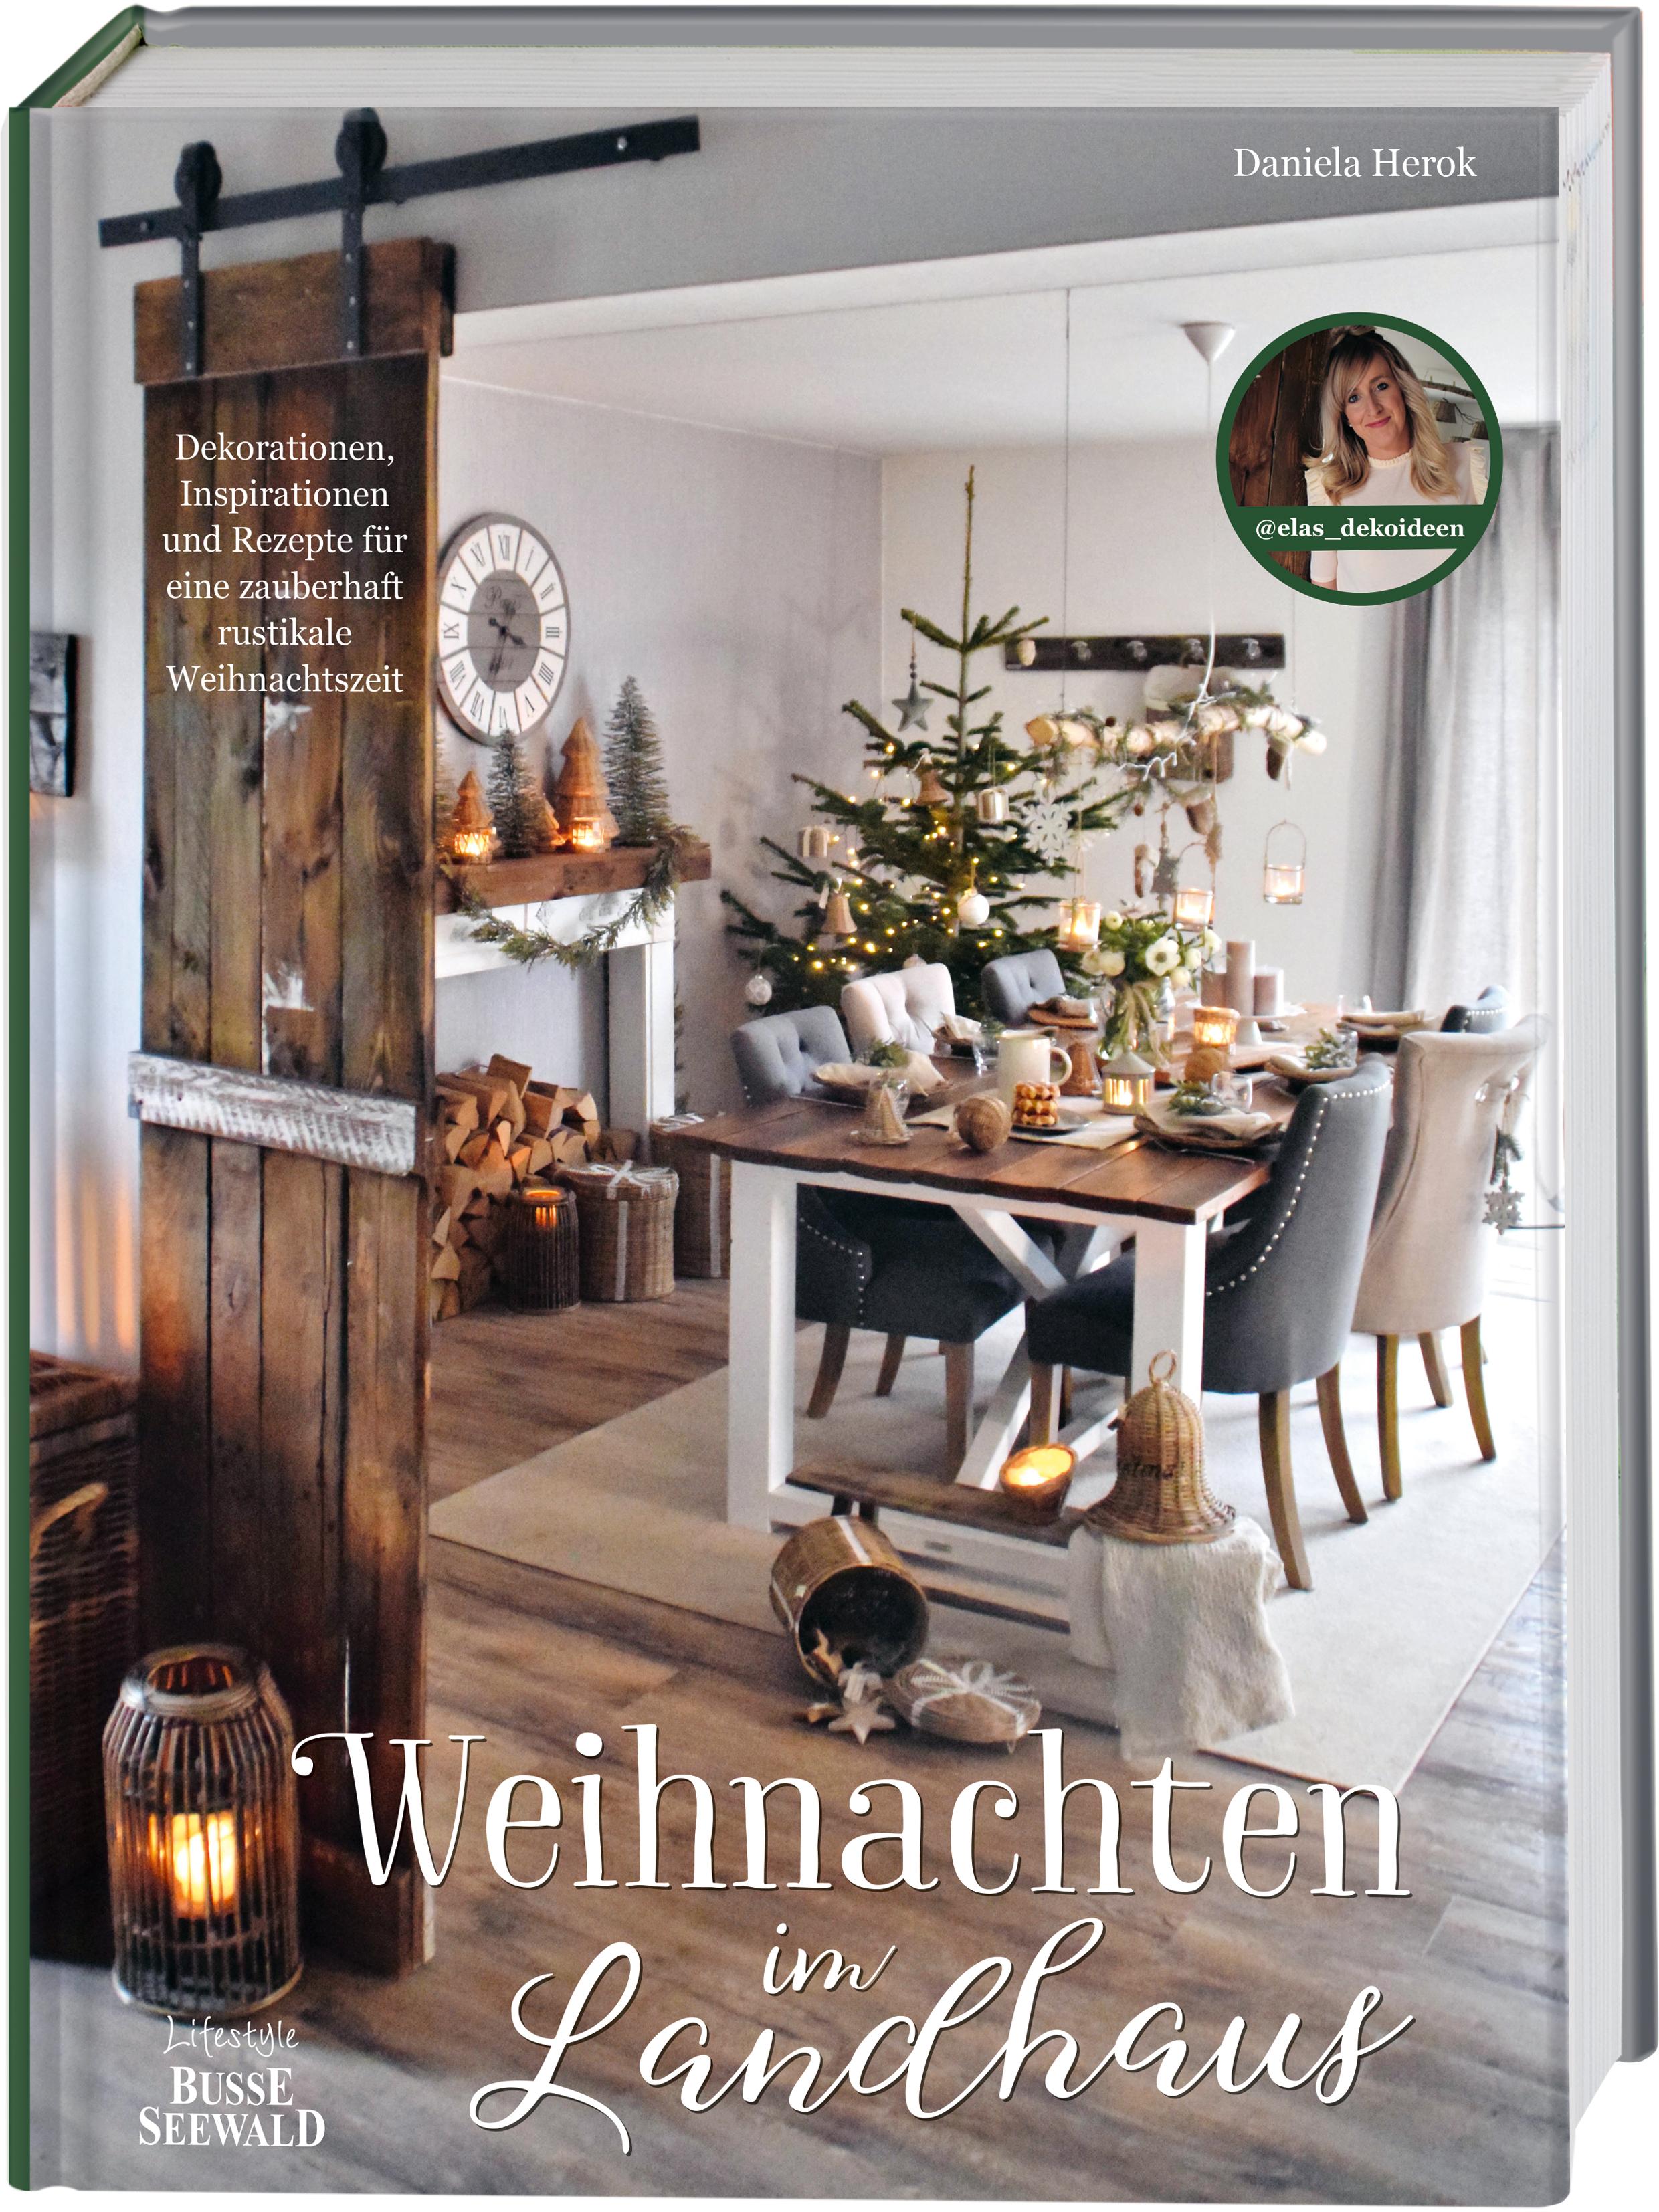 Weihnachten im Landhaus Dekorationen, Inspirationen und Rezepte für eine zauberhaft rustikale Weihnachtszeit